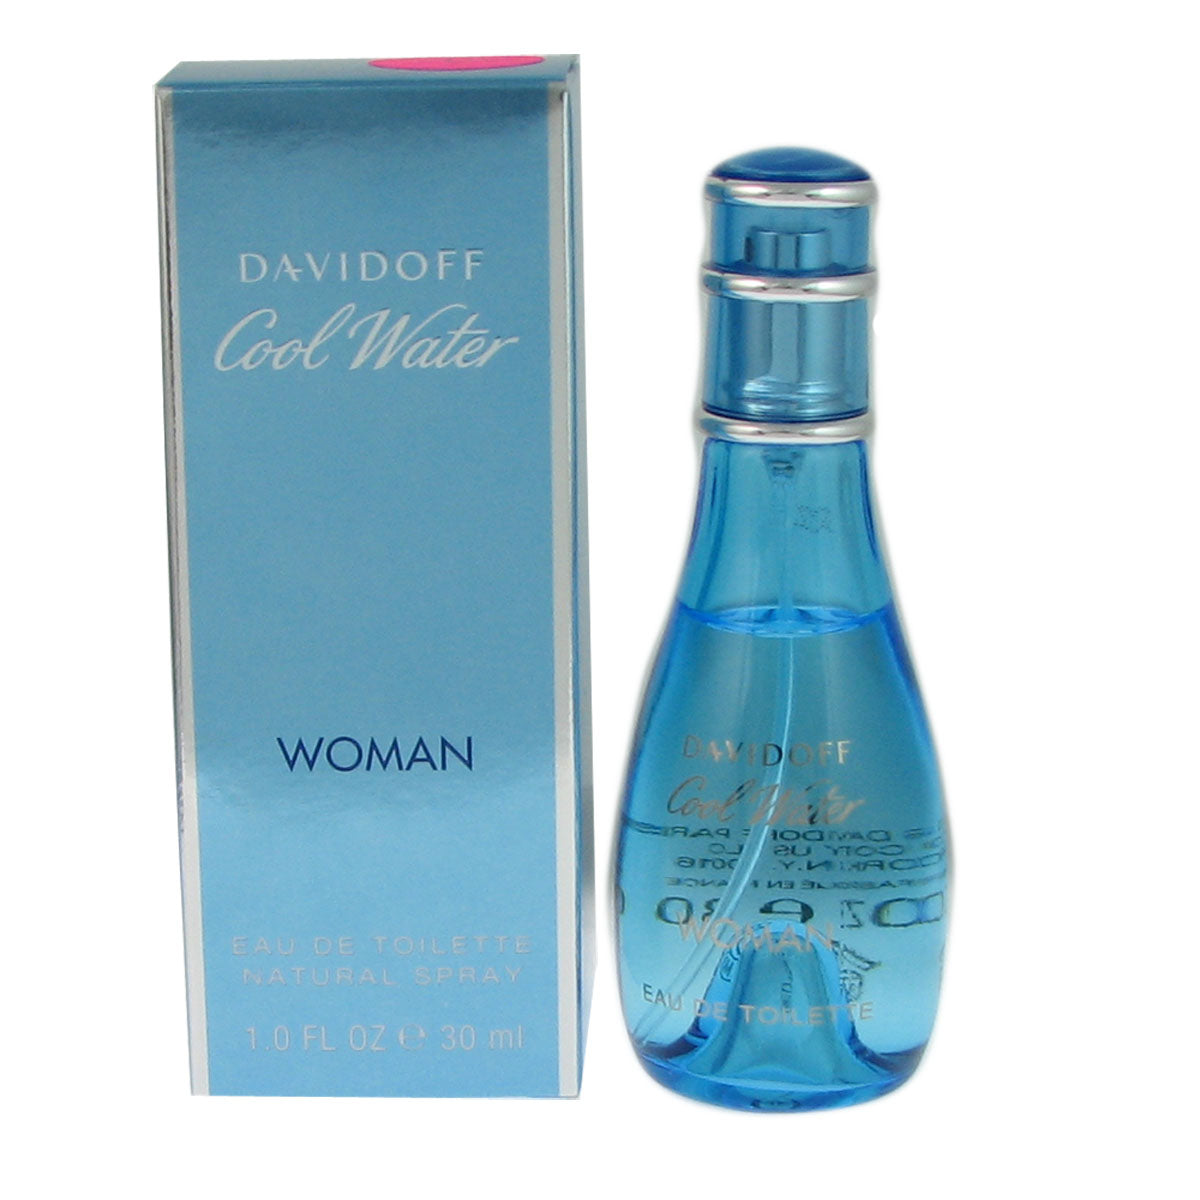 Cool Water for Women by Davidoff 1.0 oz Eau de Toilette Spray